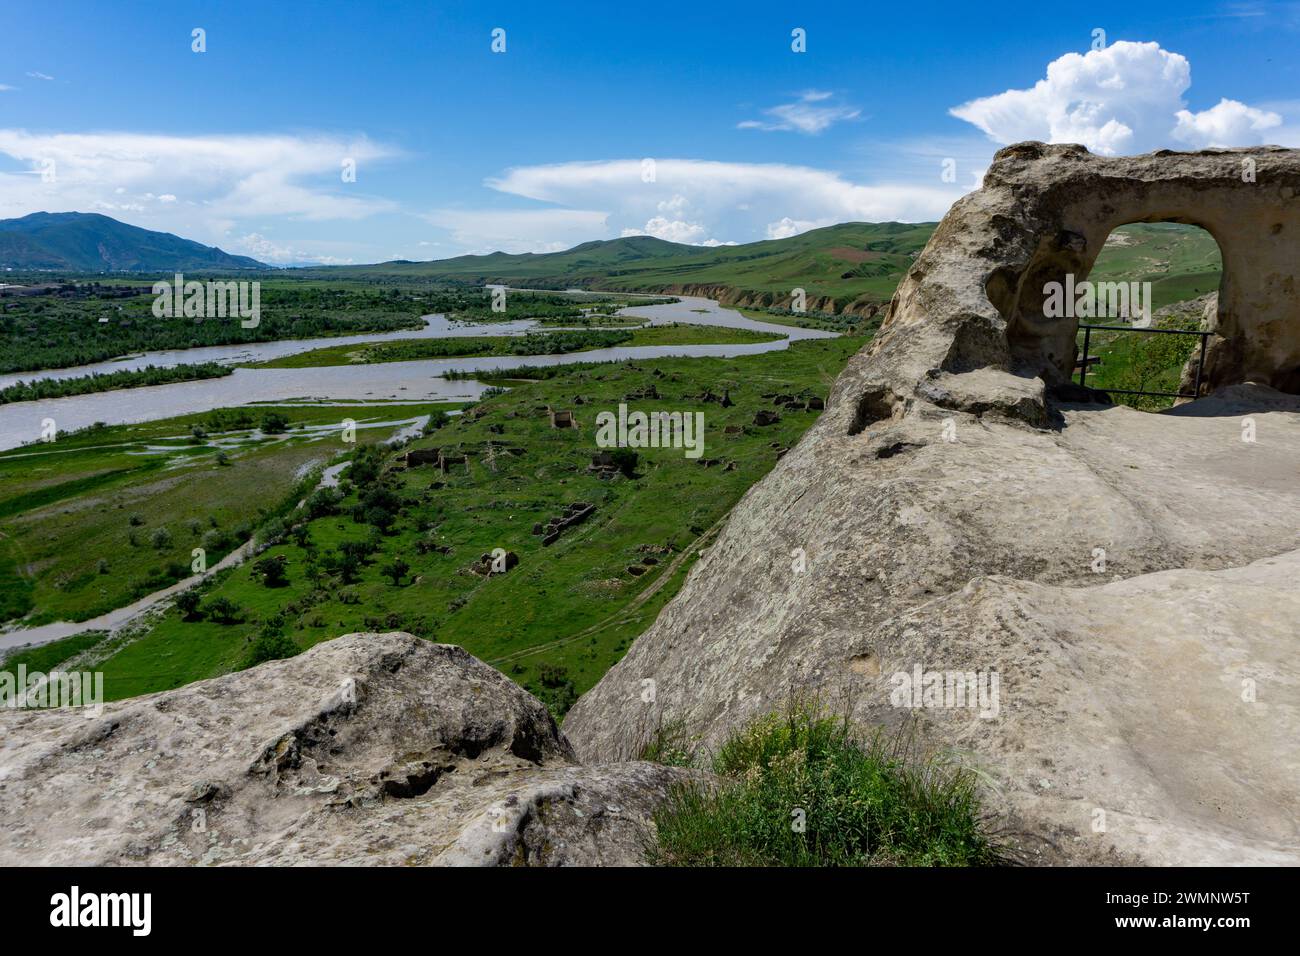 Uplistsikhe es una antigua ciudad excavada en roca en el este de Georgia, construida en una alta orilla rocosa izquierda del río Mtkvari, contiene varias estructuras dati Foto de stock